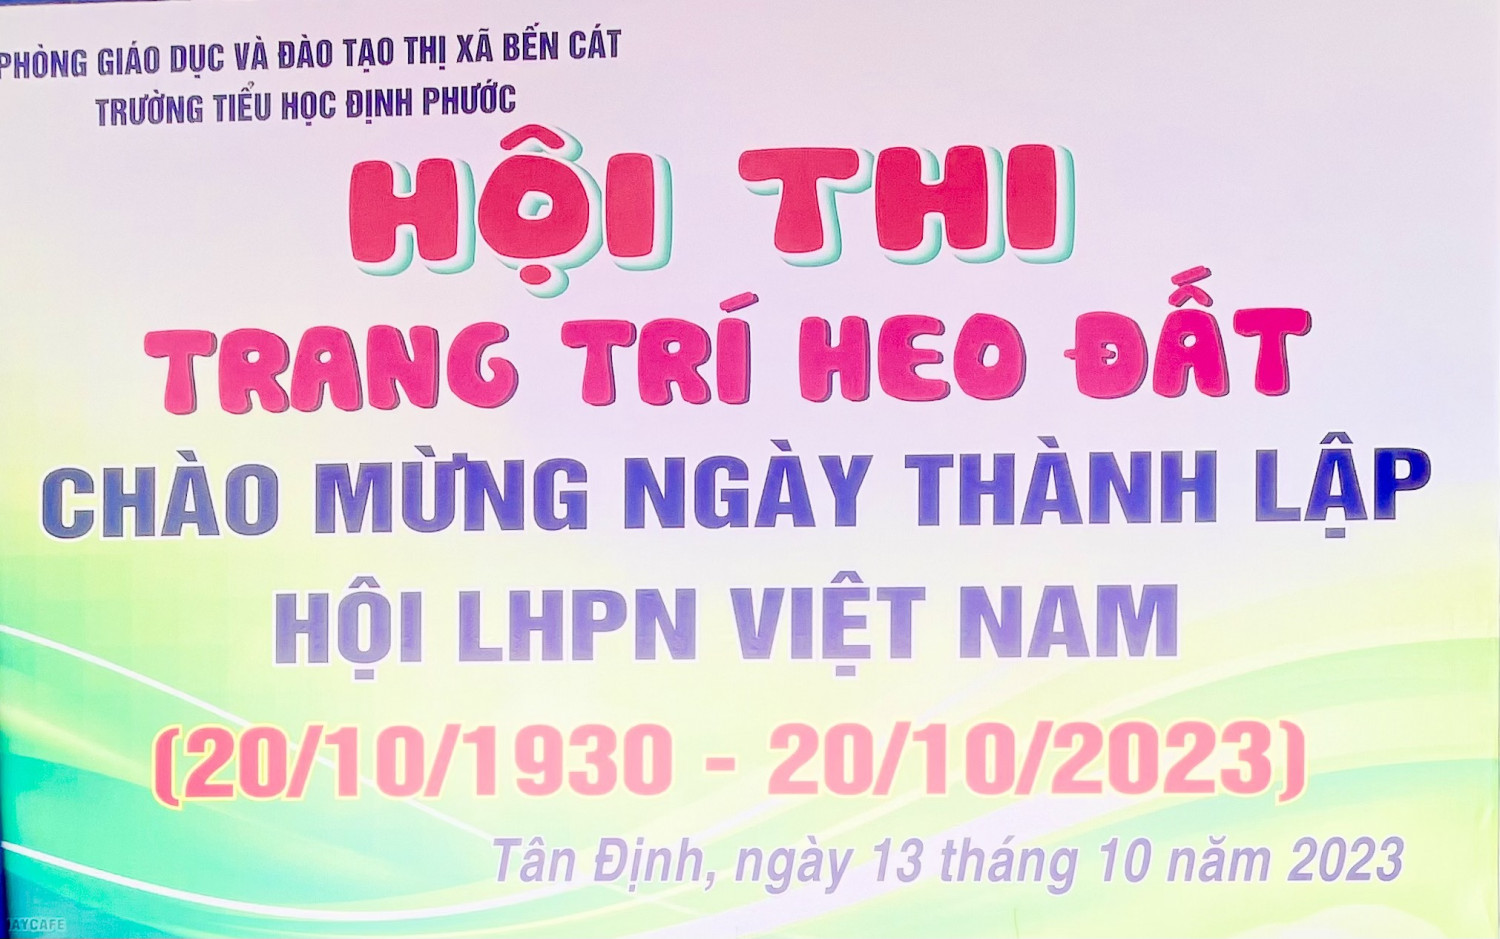 Liên đội trường Tiểu học Định Phước tổ chức Hội thi "Trang trí heo đất" với chủ đề chào mừng ngày thành lập Hội Liên Hiệp phụ nữ Việt Nam